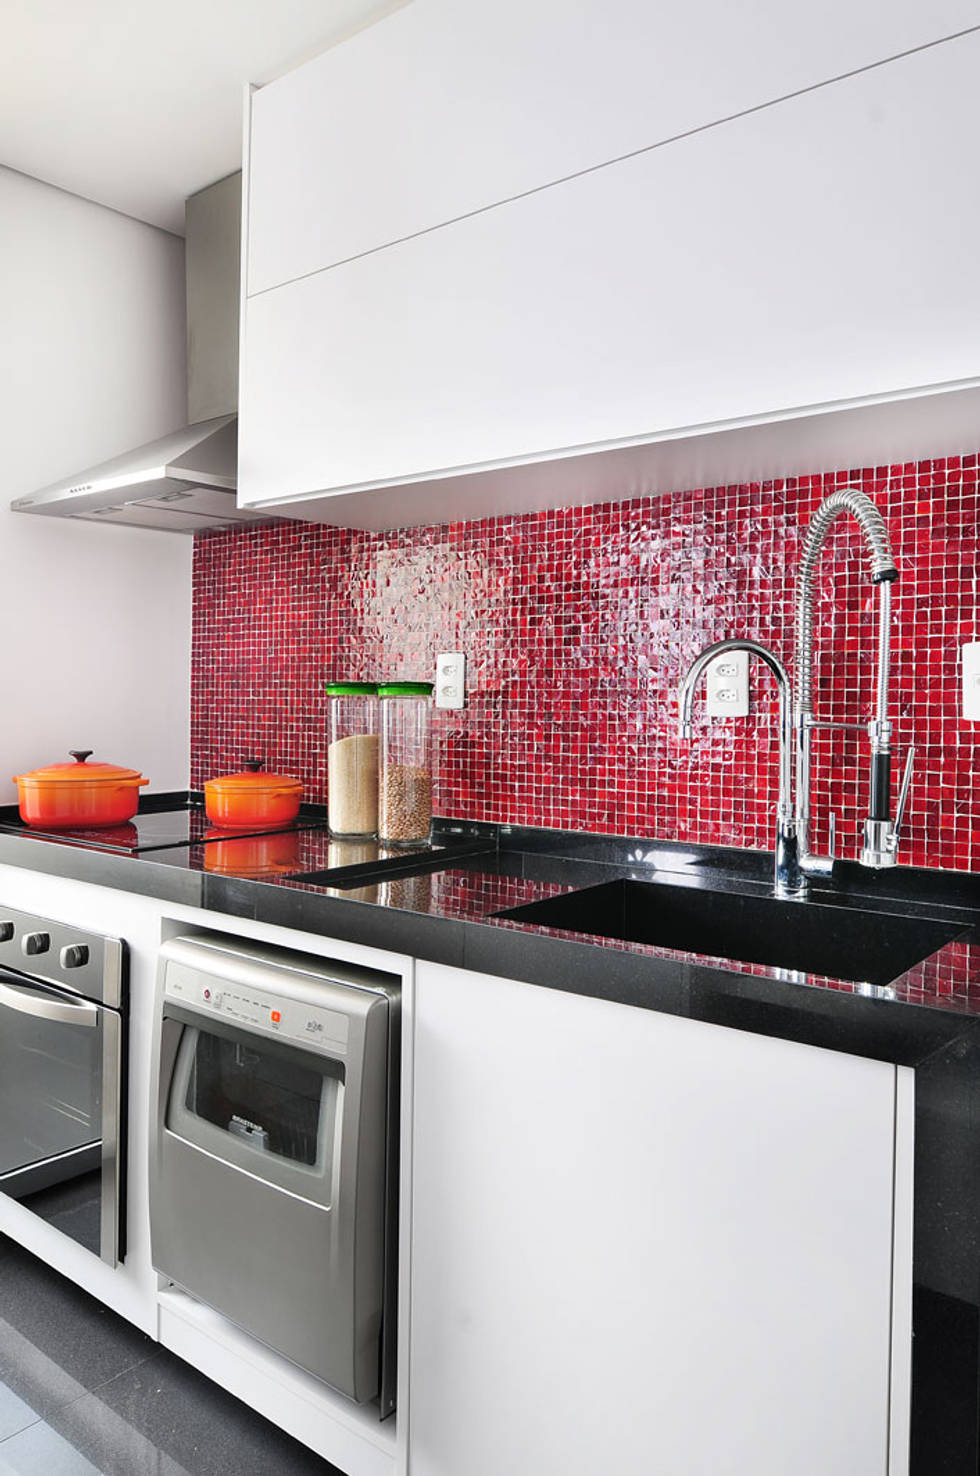 12 видов мозаики для вашей кухни- фотографии
				